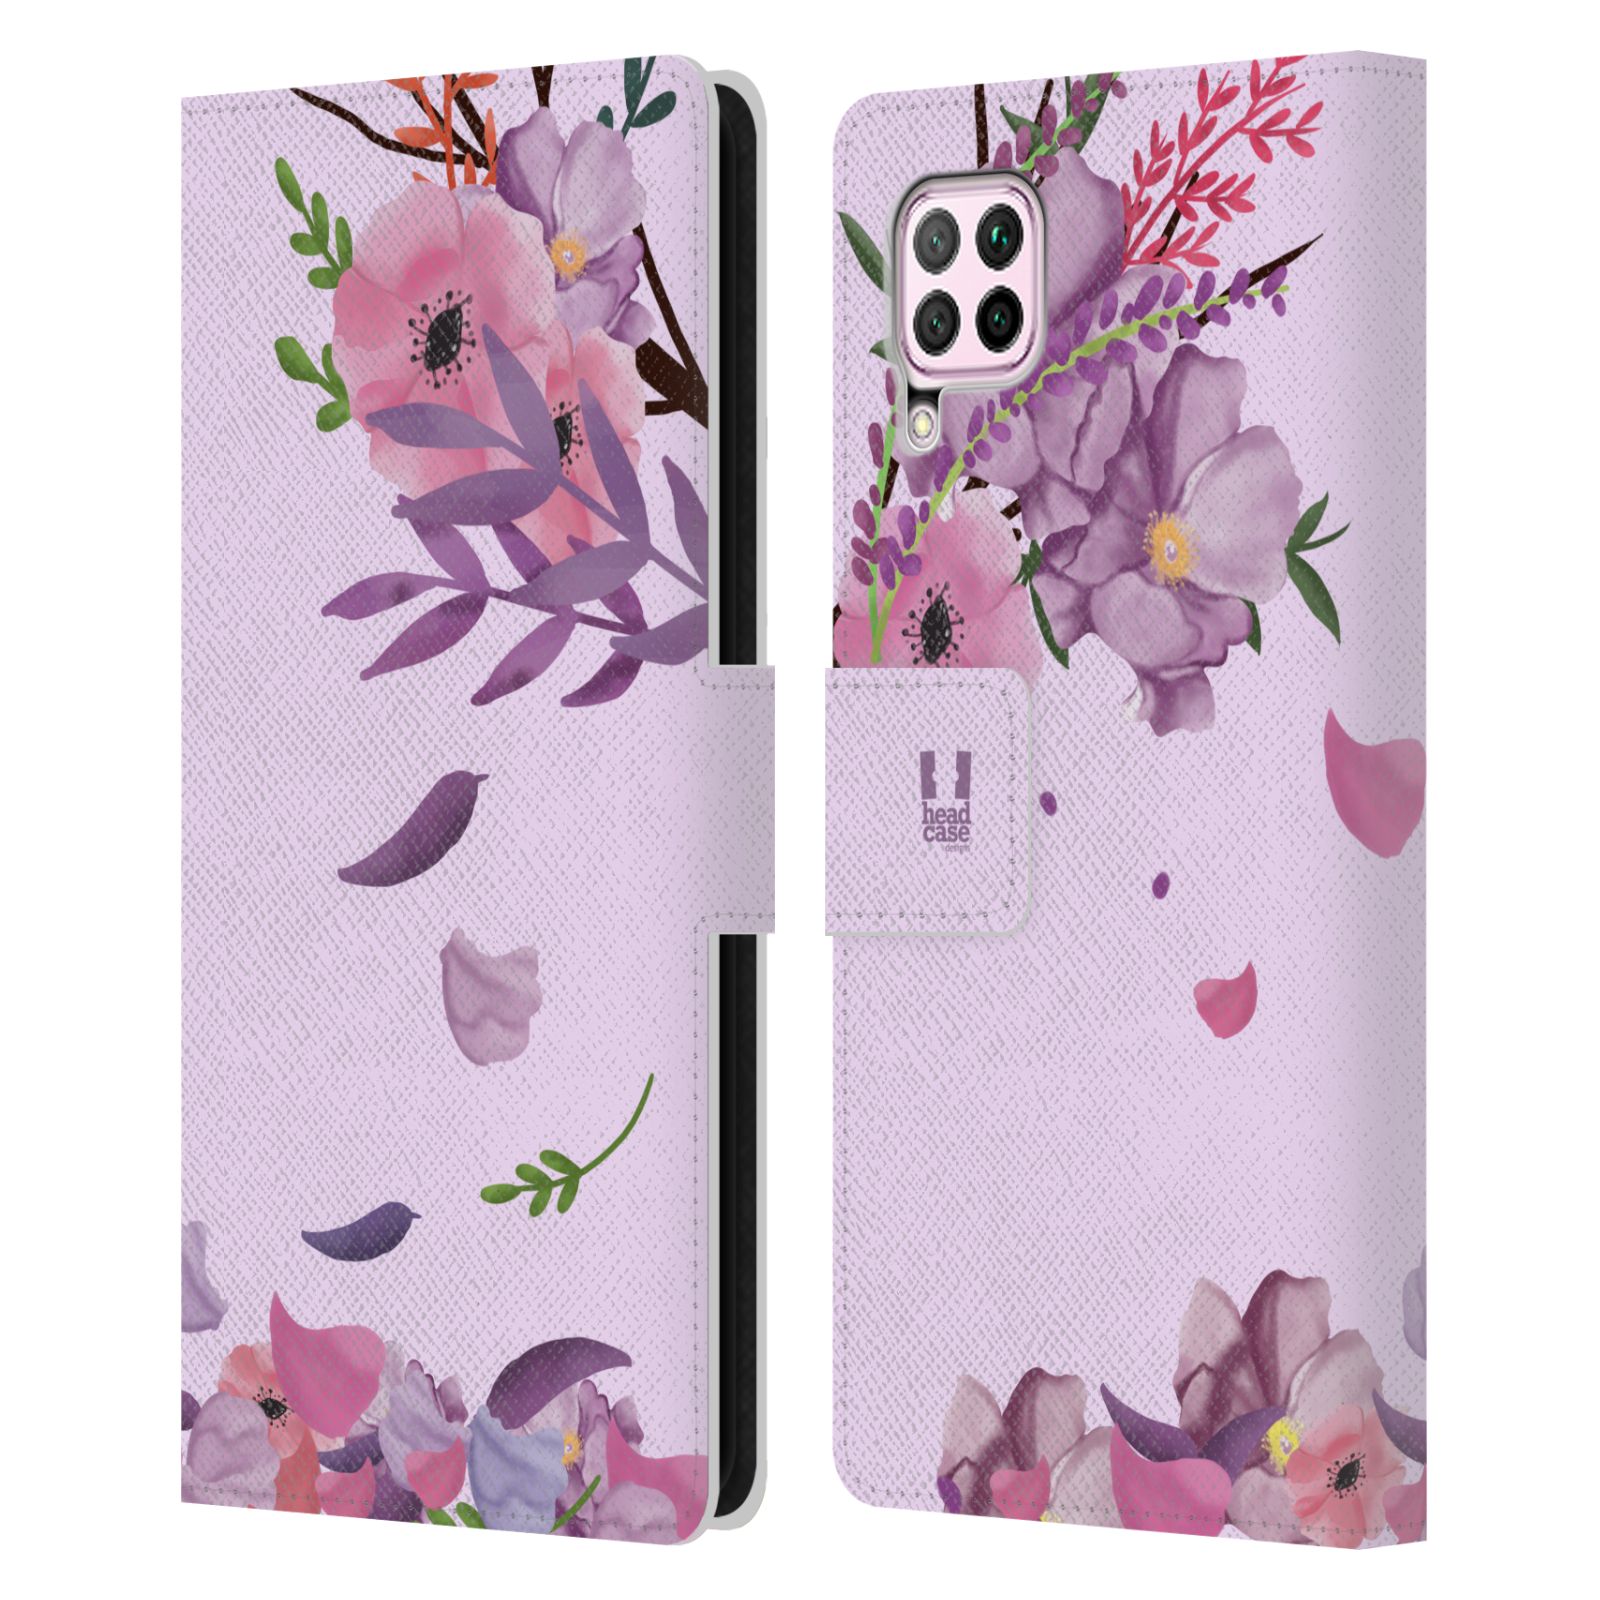 Pouzdro na mobil Huawei P40 LITE - HEAD CASE - Rozkvetlé růže a listy růžová